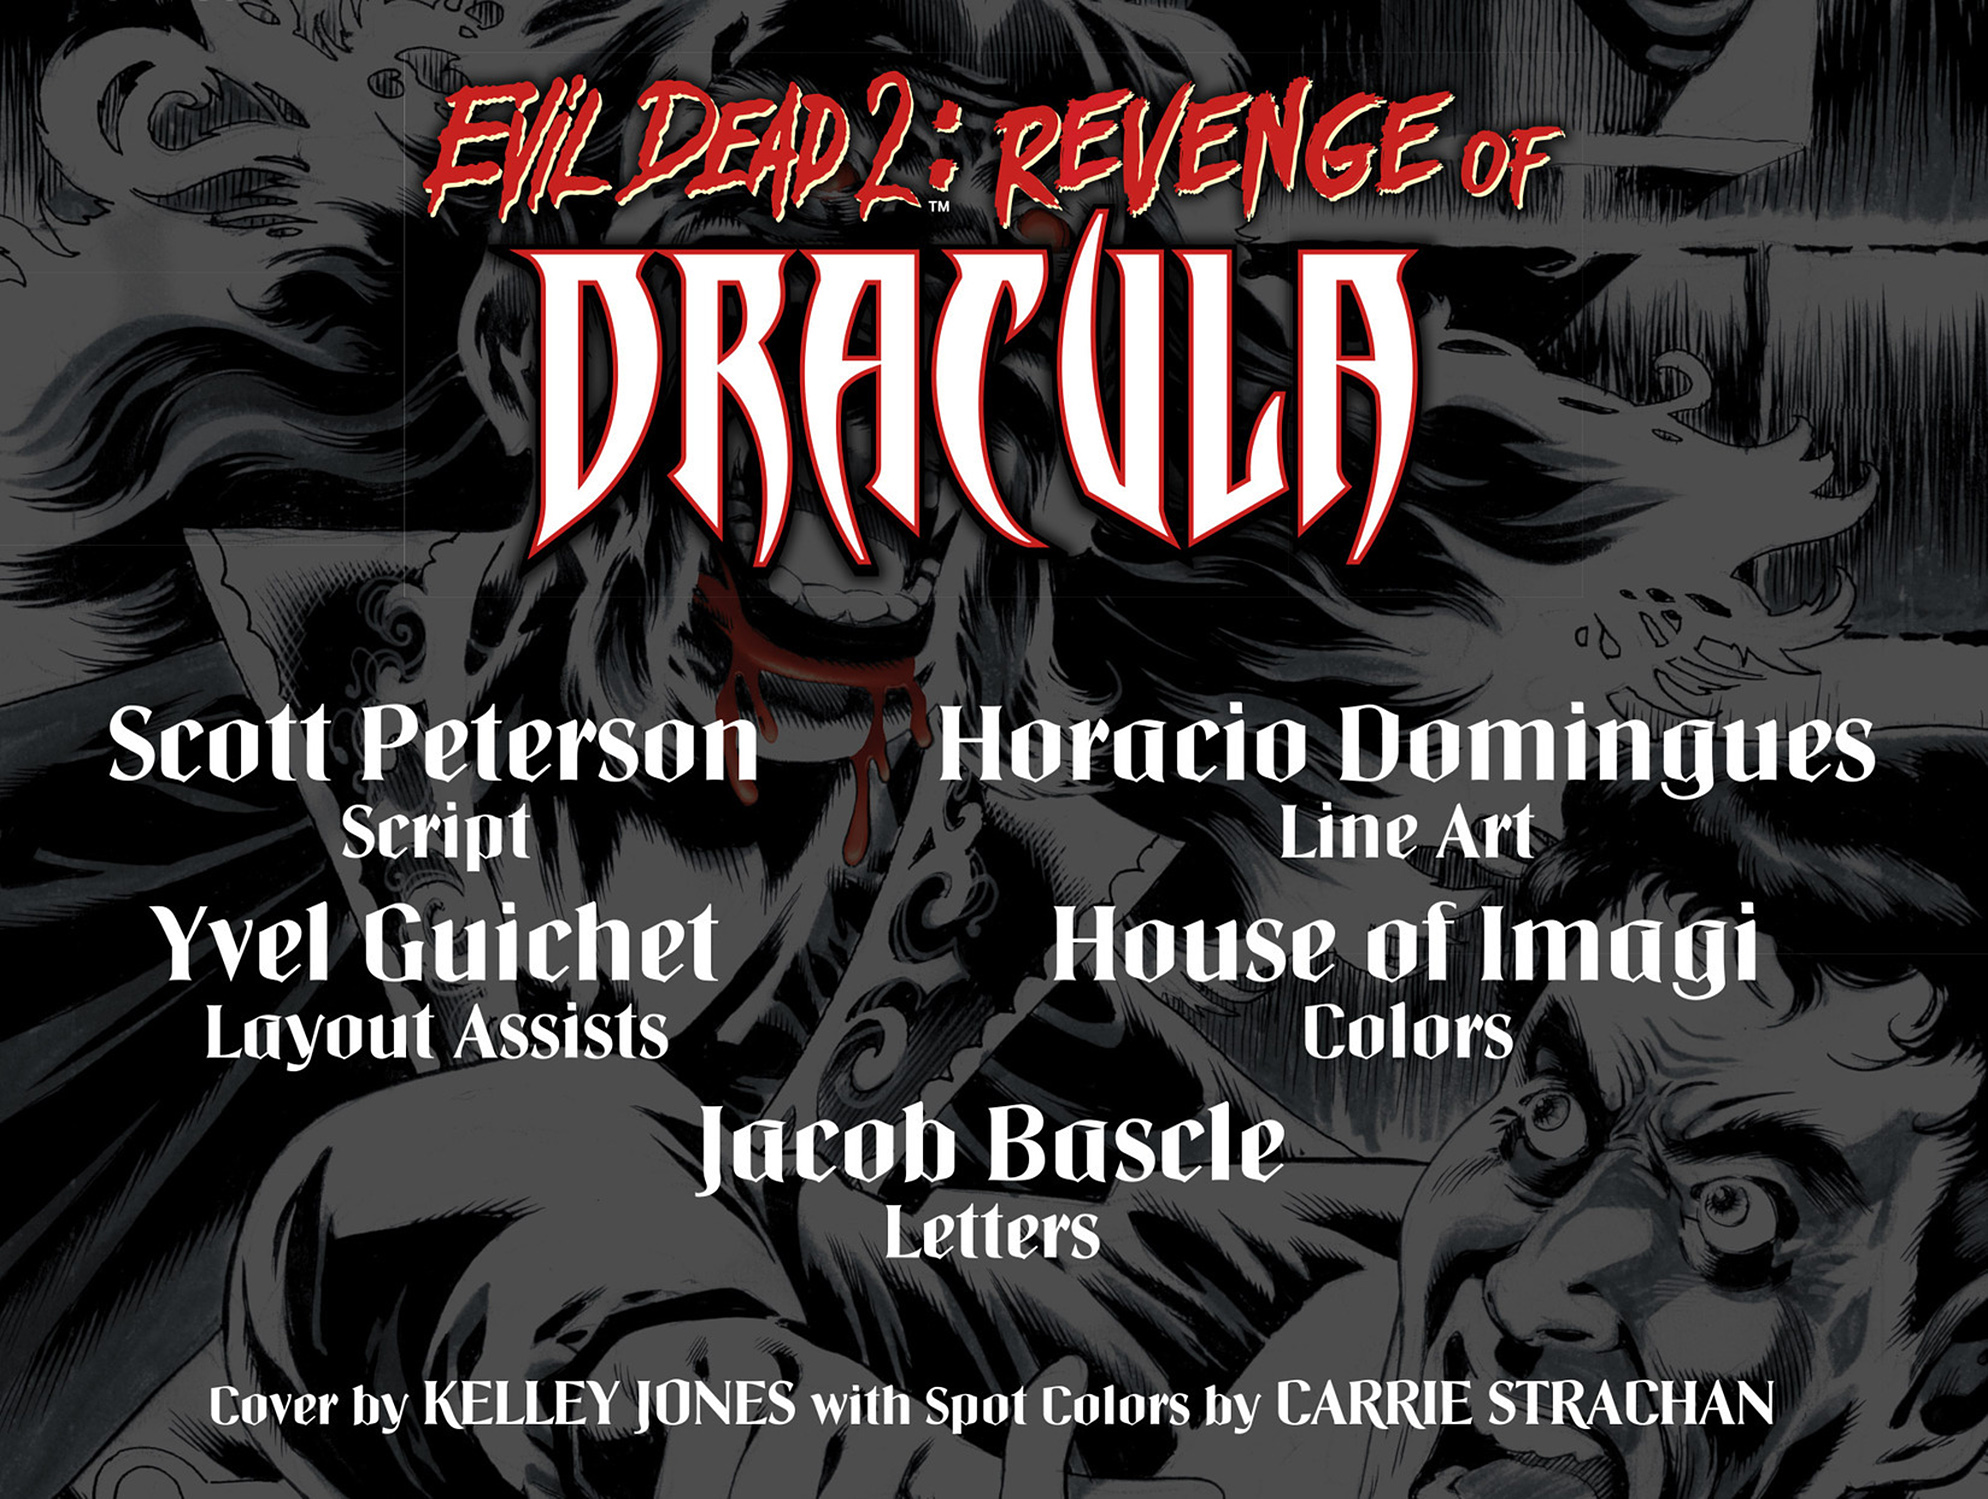 Read online Evil Dead 2: Revenge of Dracula comic -  Issue #2 - 2